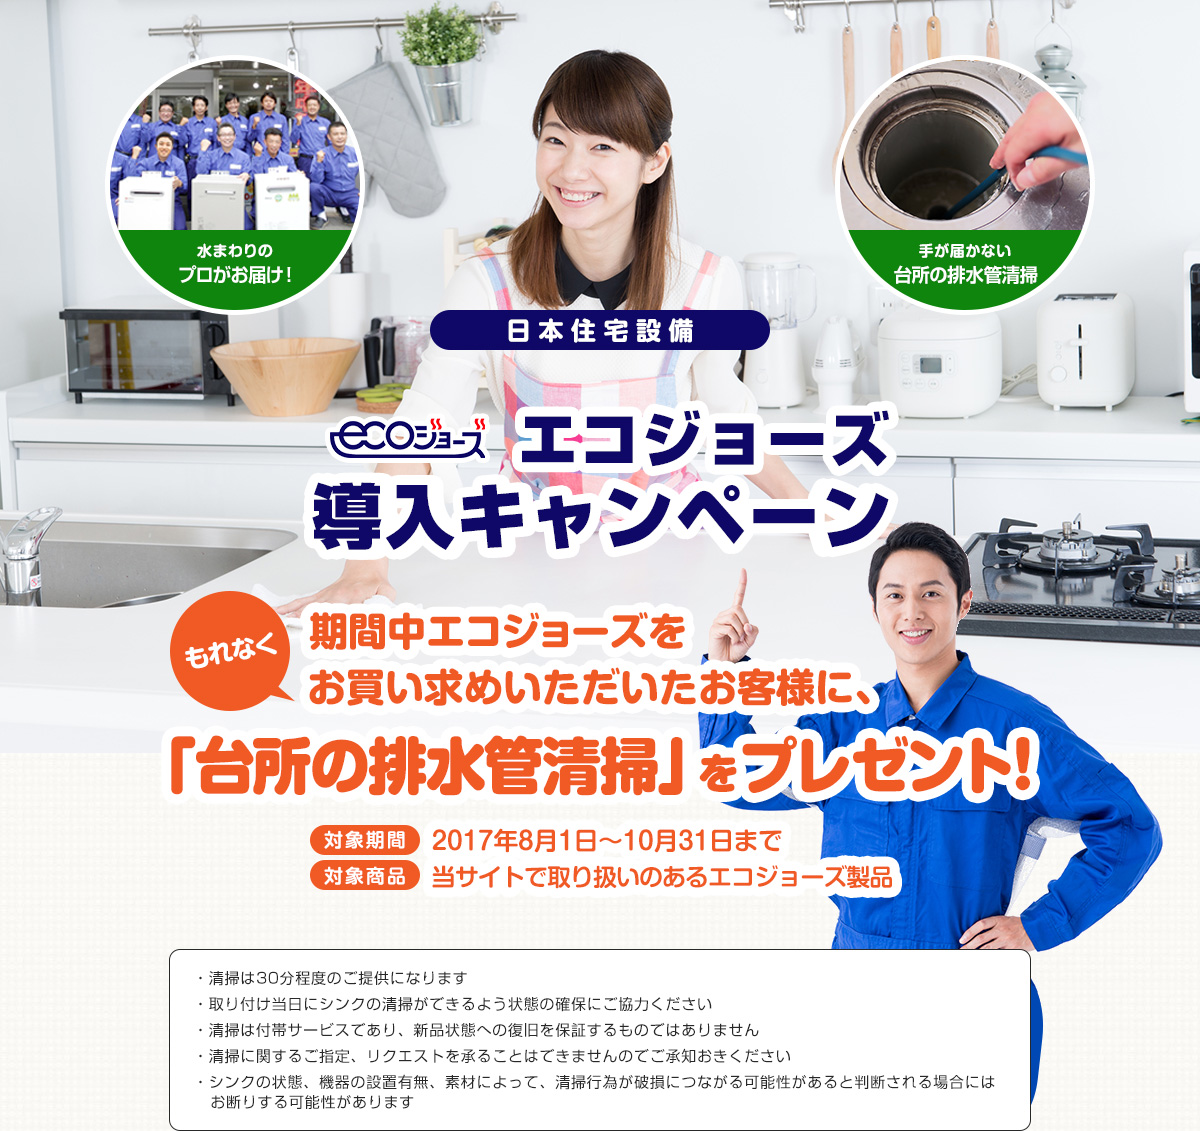 日本住宅設備エコジョーズ導入キャンペーン期間中エコジョーズをお買い求めいただいたお客様に、「シンク清掃」をプレゼント！対象期間 2017年8月1日〜10月31日まで対象商品 当サイトで取り扱いのあるエコジョーズ製品